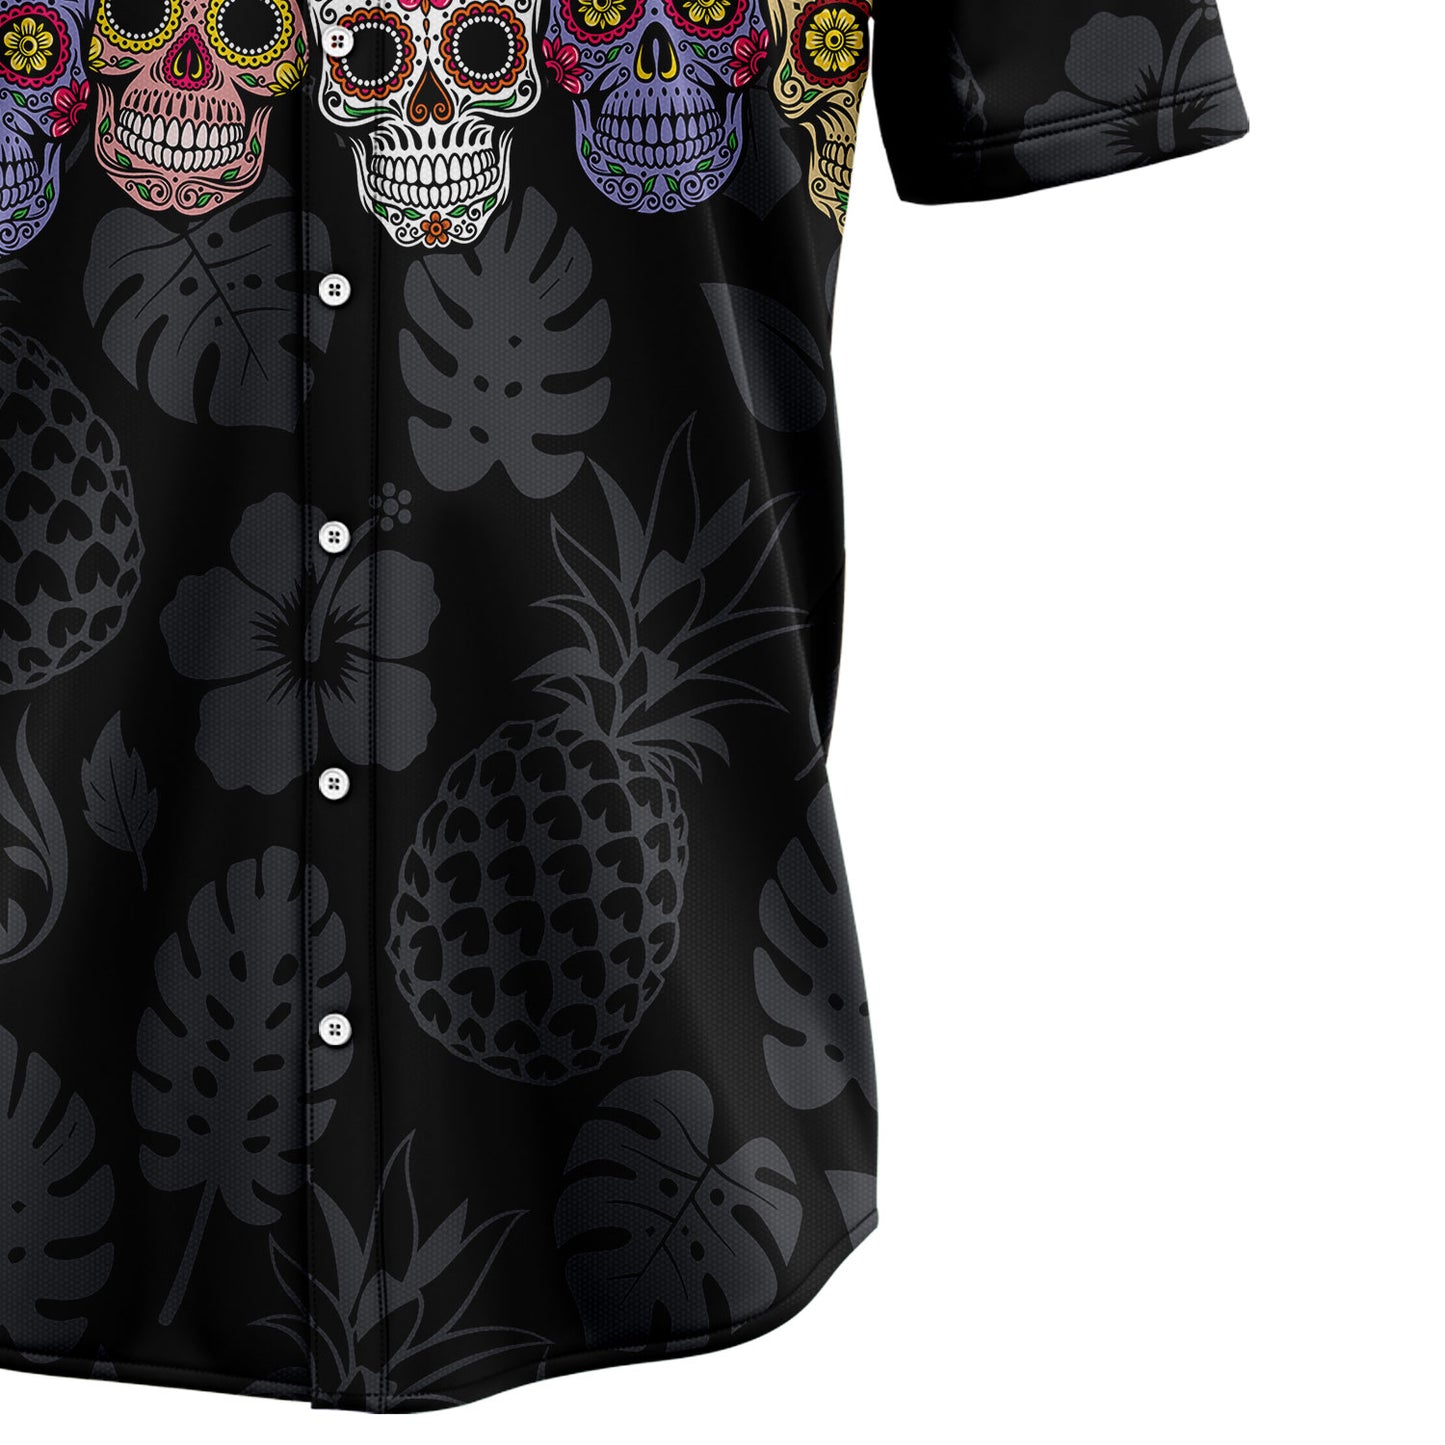 Classic Skull H237018 Hawaiian Shirt